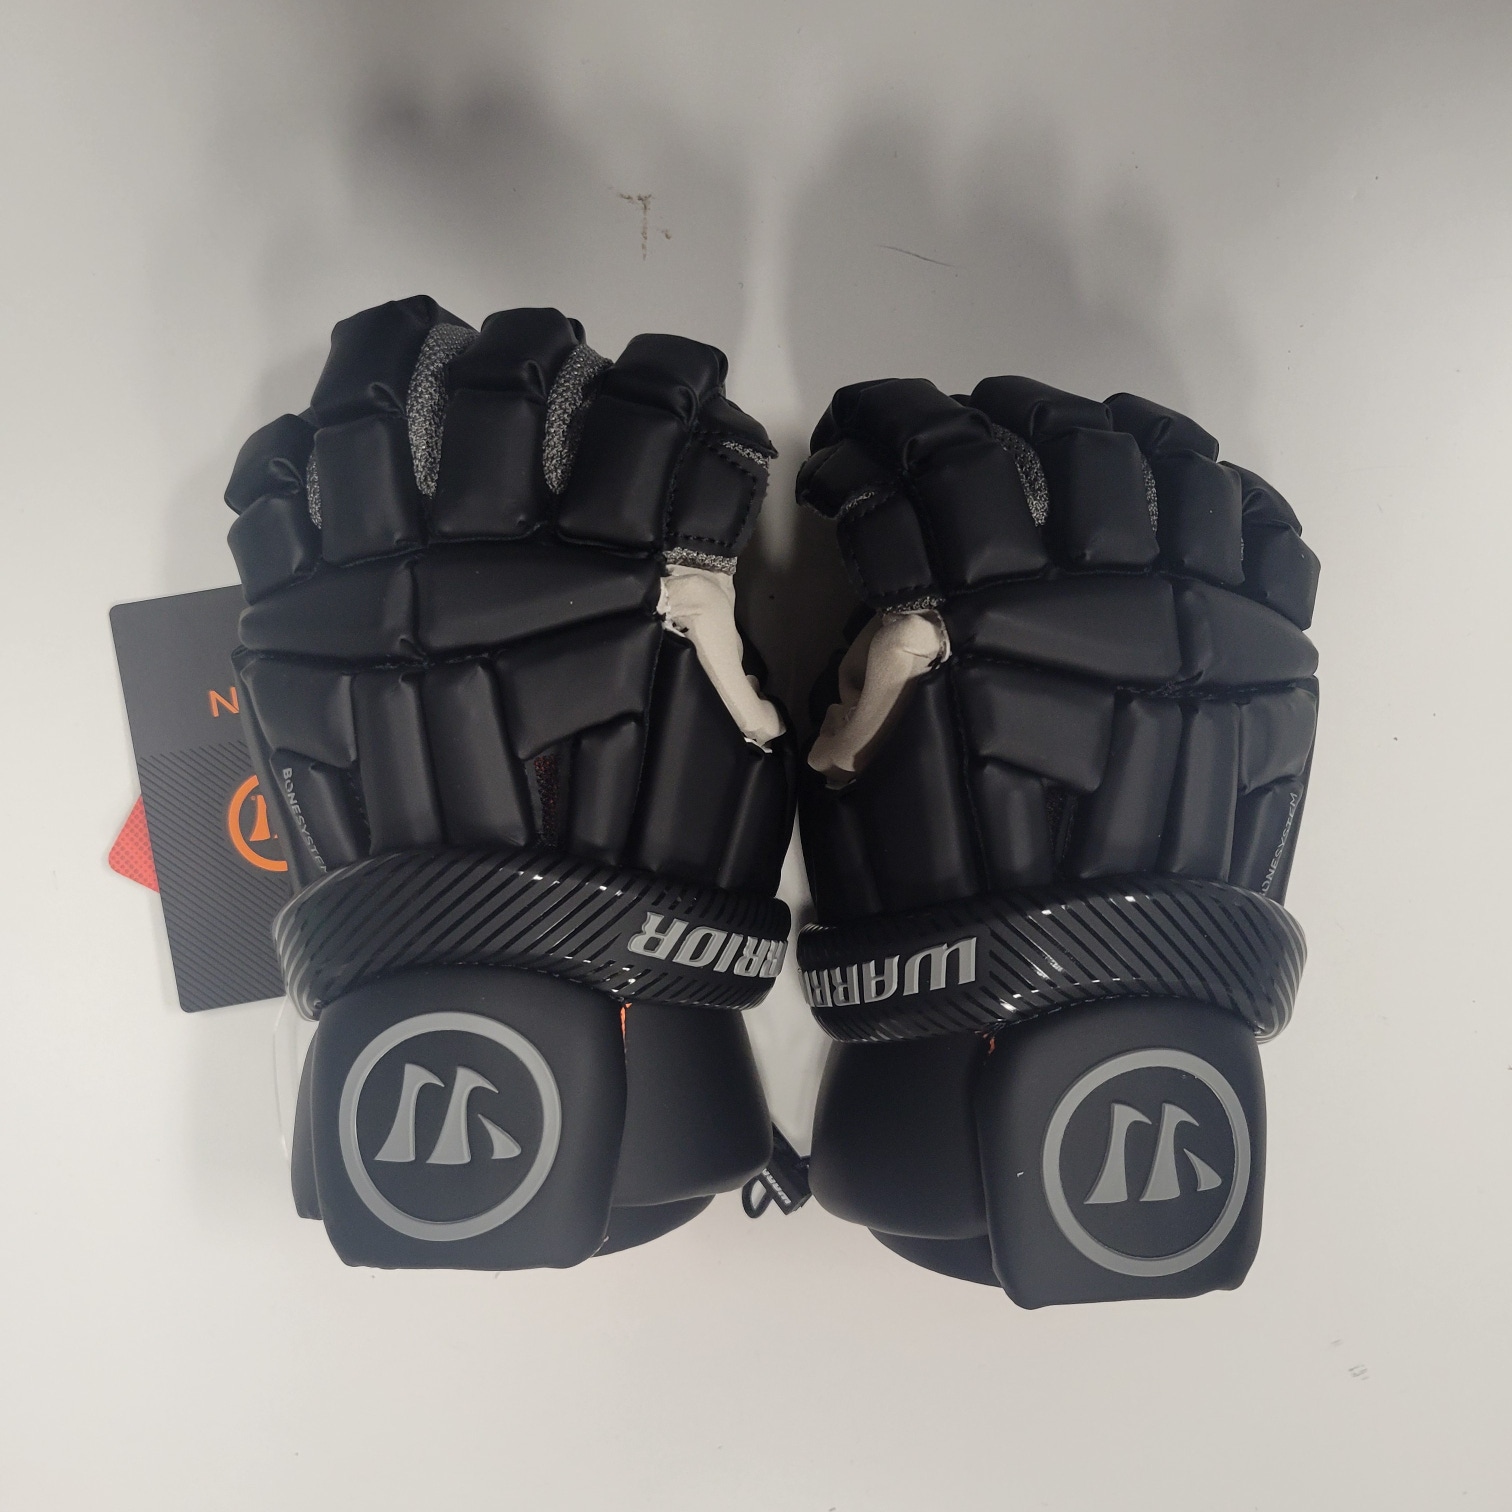 New Warrior Burn Lacrosse Gloves Medium Black - 23' Model